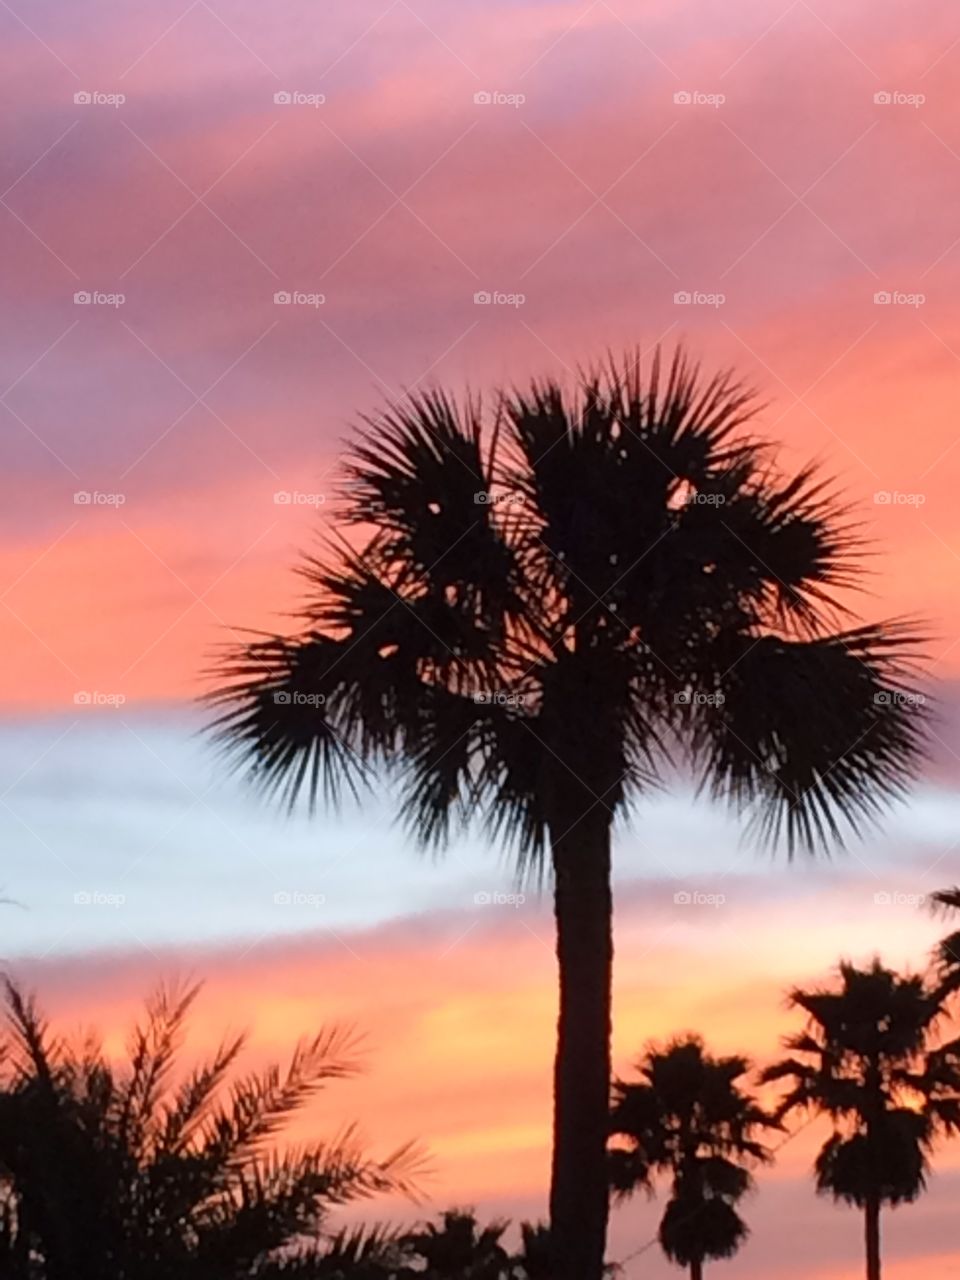 Florida sunrise
